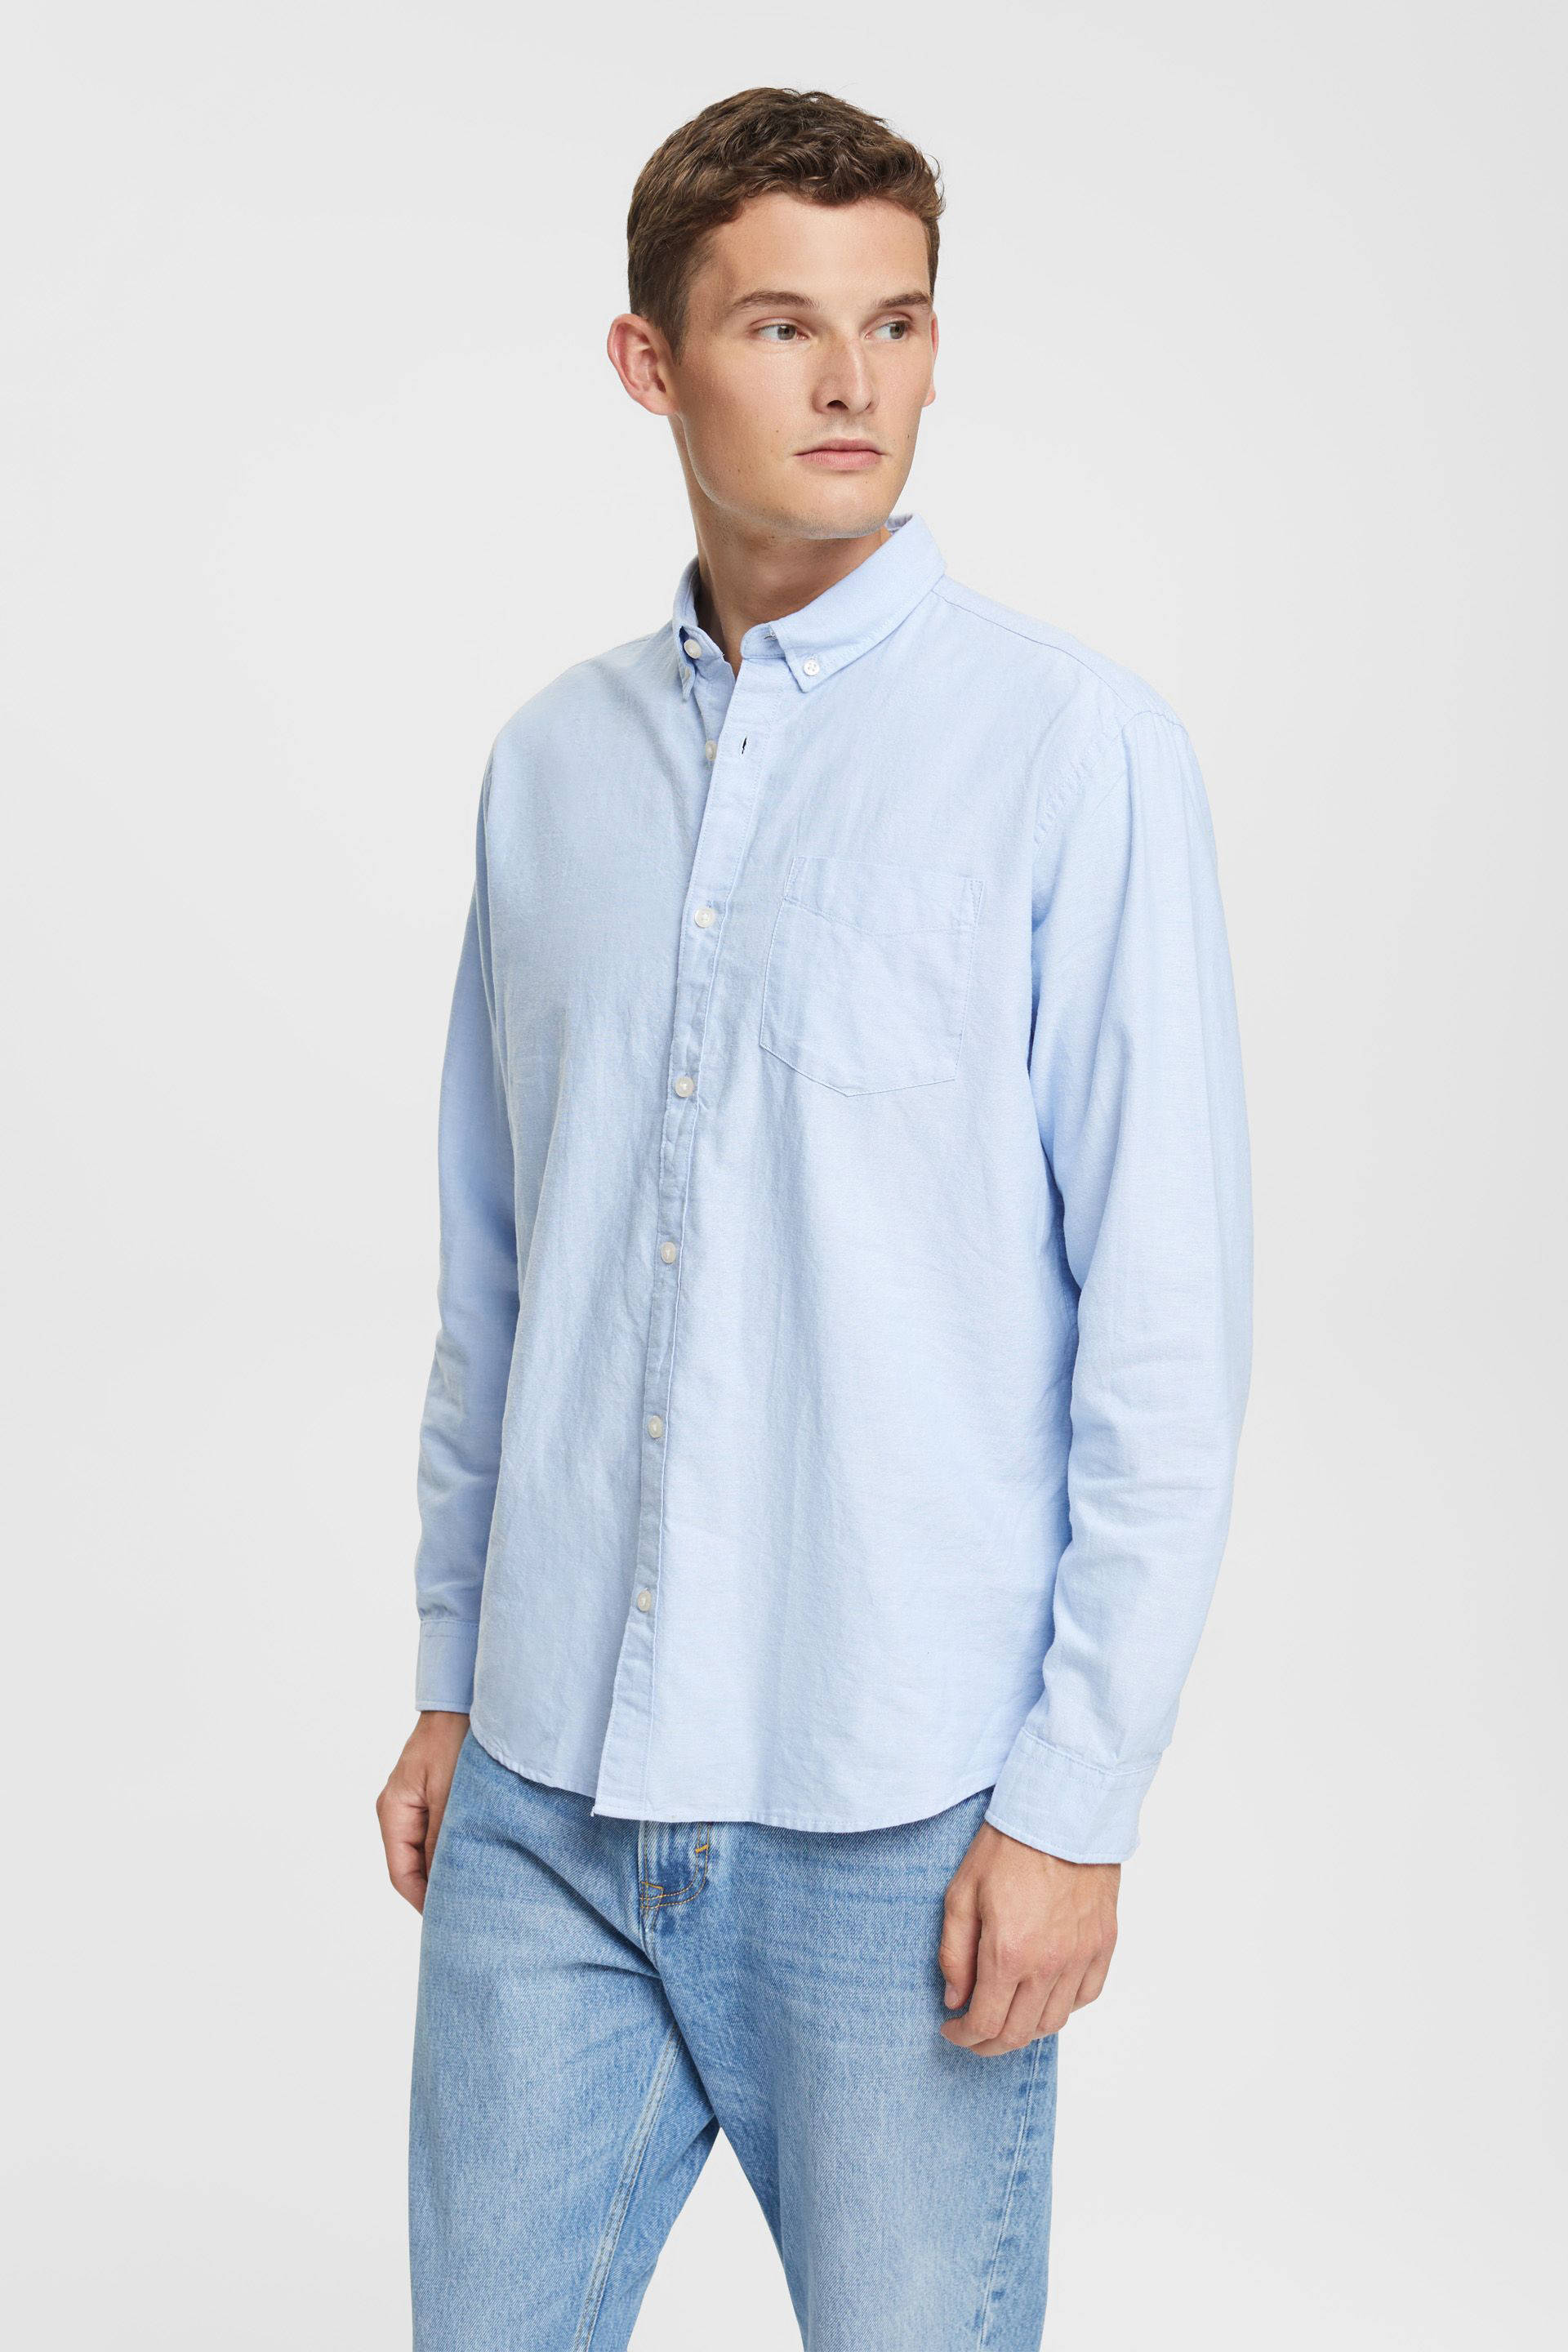 Heren Kleding voor voor Overhemden voor Casual en nette overhemden Esprit Vrijetijdshemd Regular Fit 123ee2f004 in het Blauw voor heren 